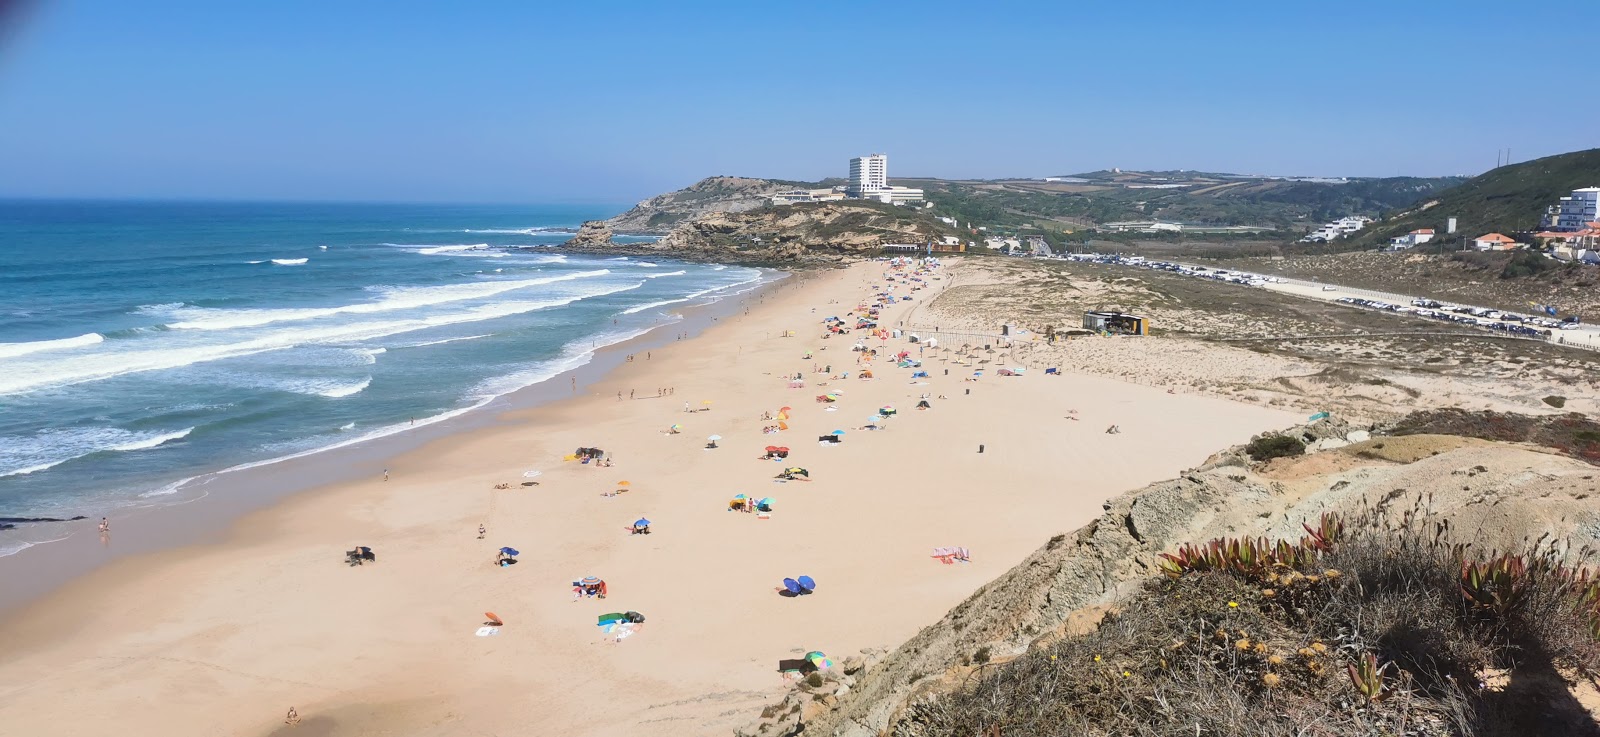 Foto von Praia de Santa Rita mit langer gerader strand